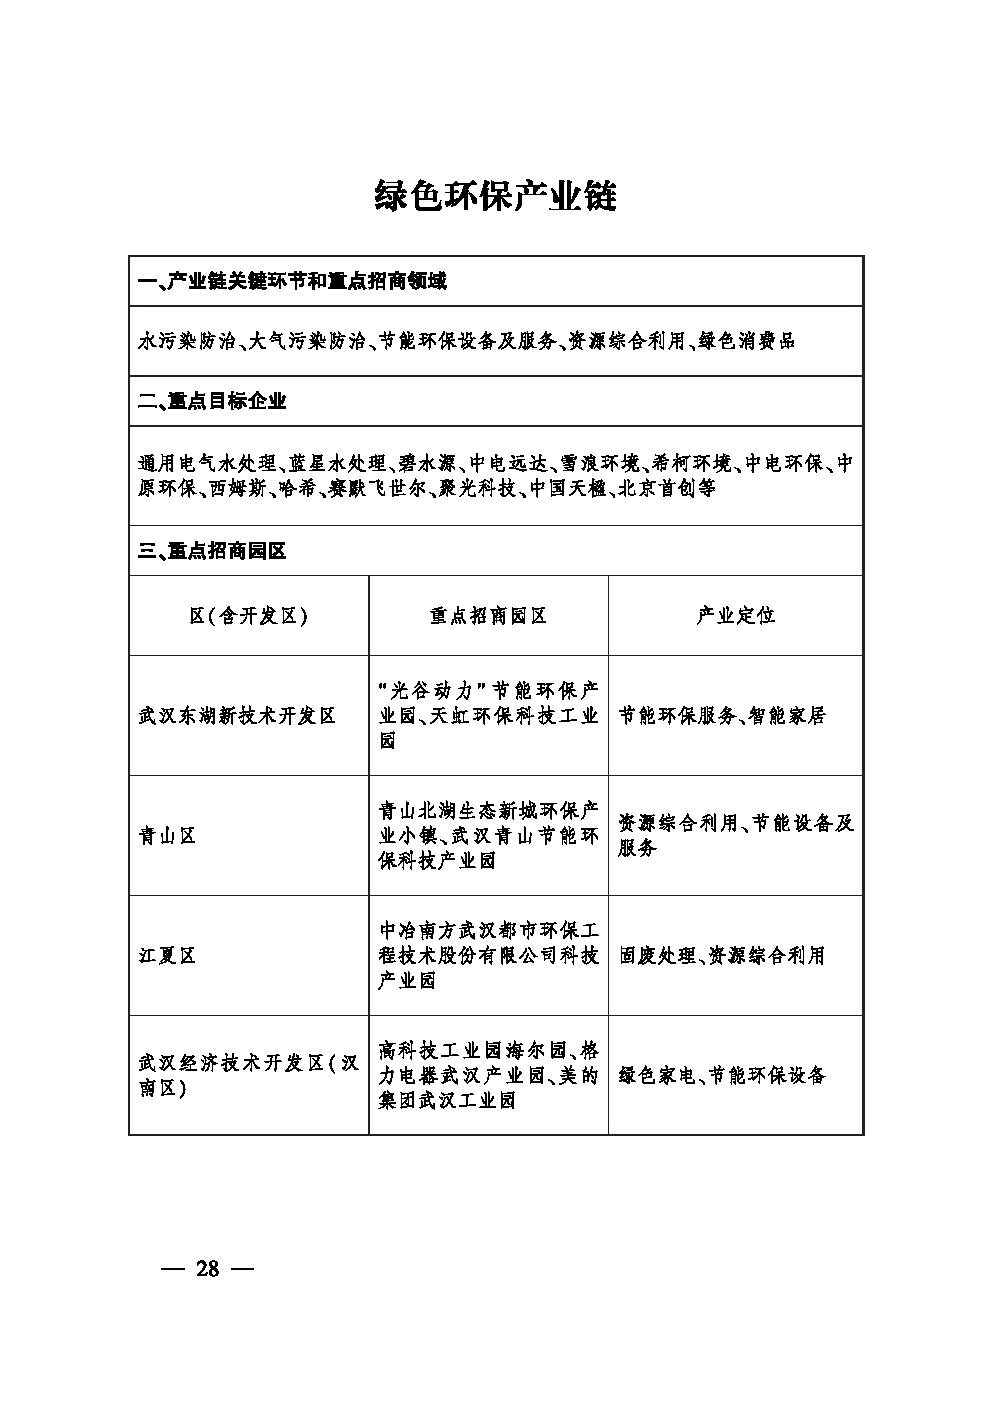 市人民政府办公厅关于印发武汉市大力推进招商引资工作实施方案的通知(图23)